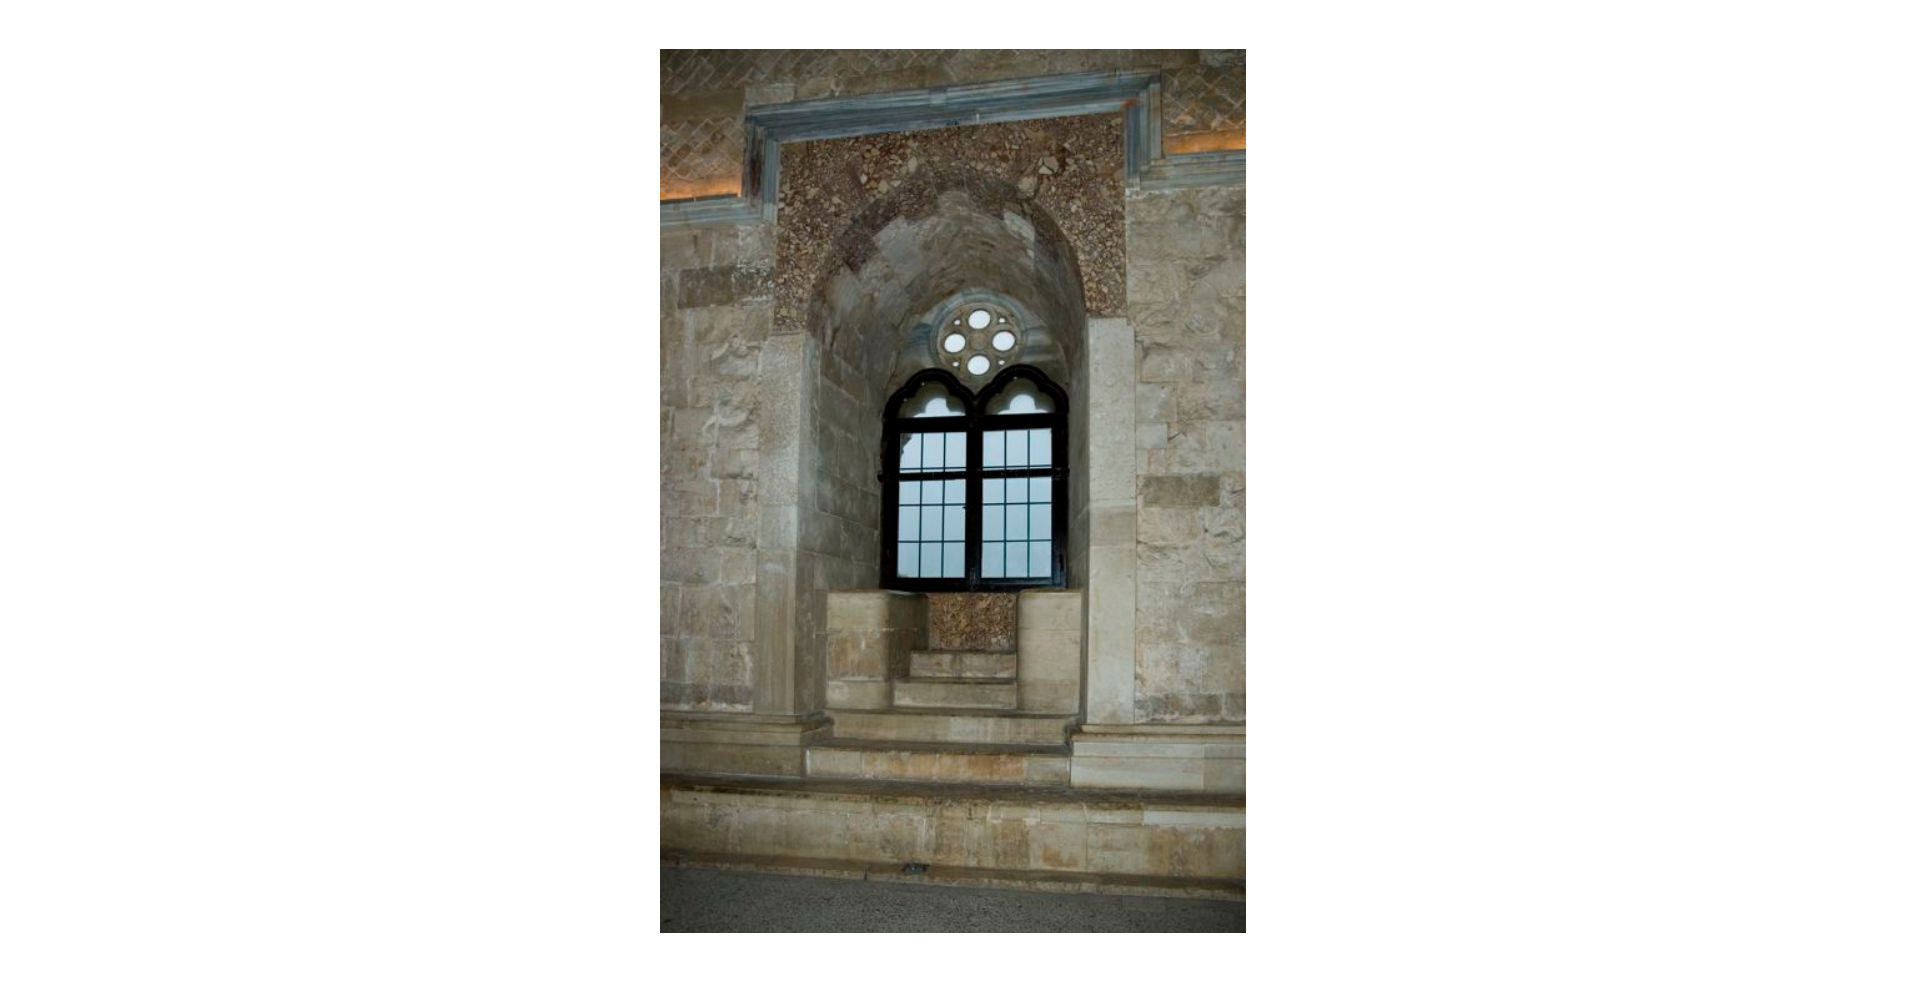 Albino Stocchi - Gerardo Leone, Castel del Monte - pianta ottagonale - stanza trapezoidale con finestra ad arco - interno - Particolare, 2007, fotografia digitale, DGT012337